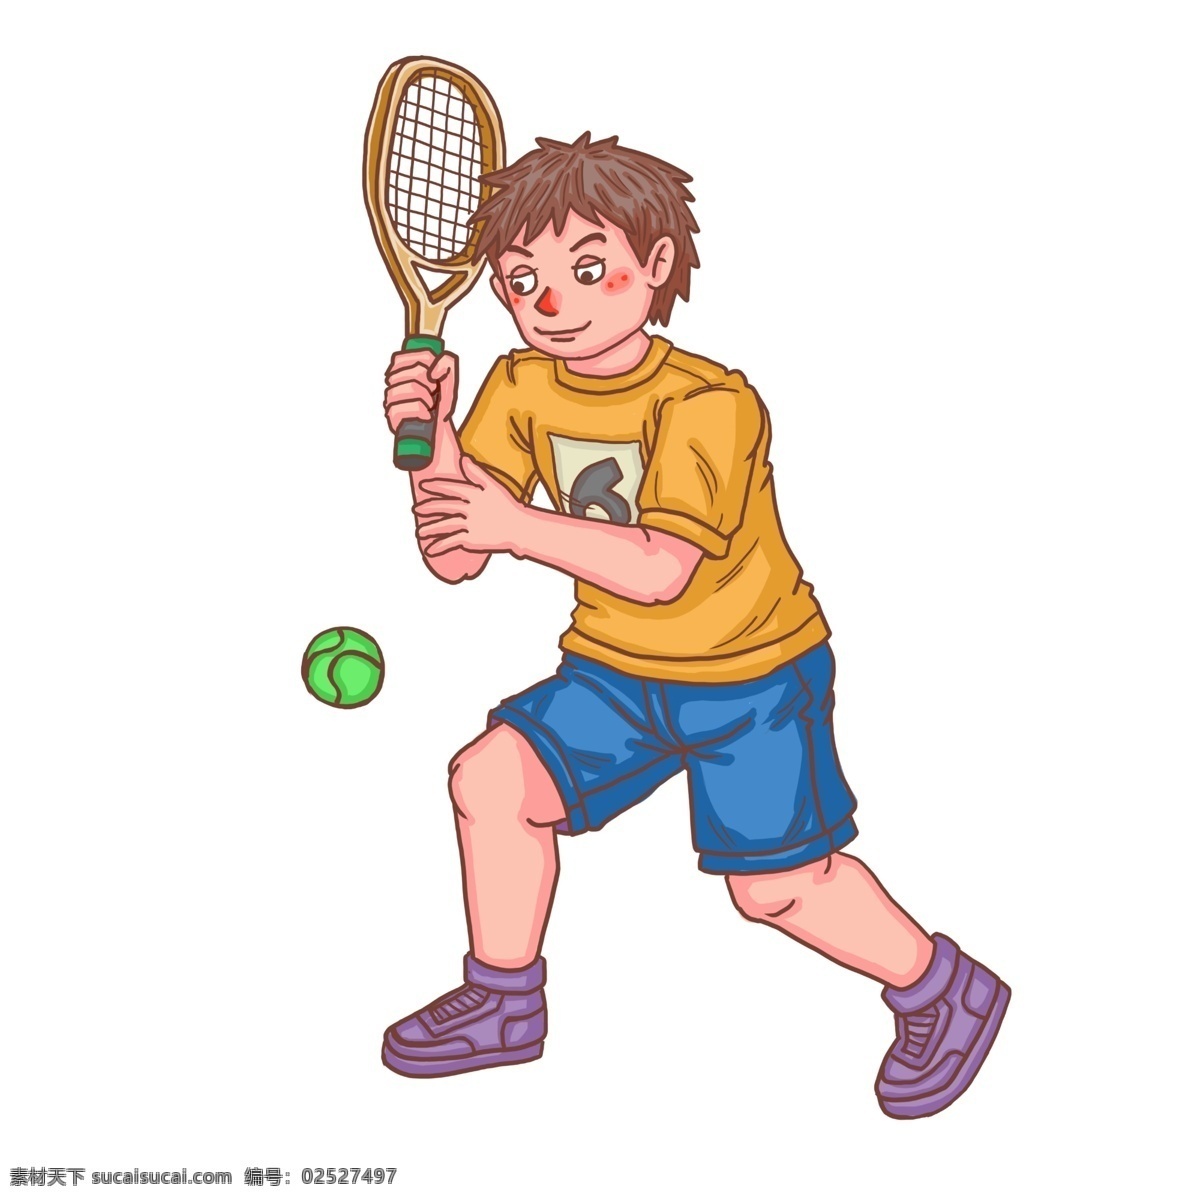 卡通 比赛 青年 人物 网球 比赛人物 卡通比赛人物 网球比赛场 网球比赛 比赛第一名 快乐男孩 奖杯 奖牌